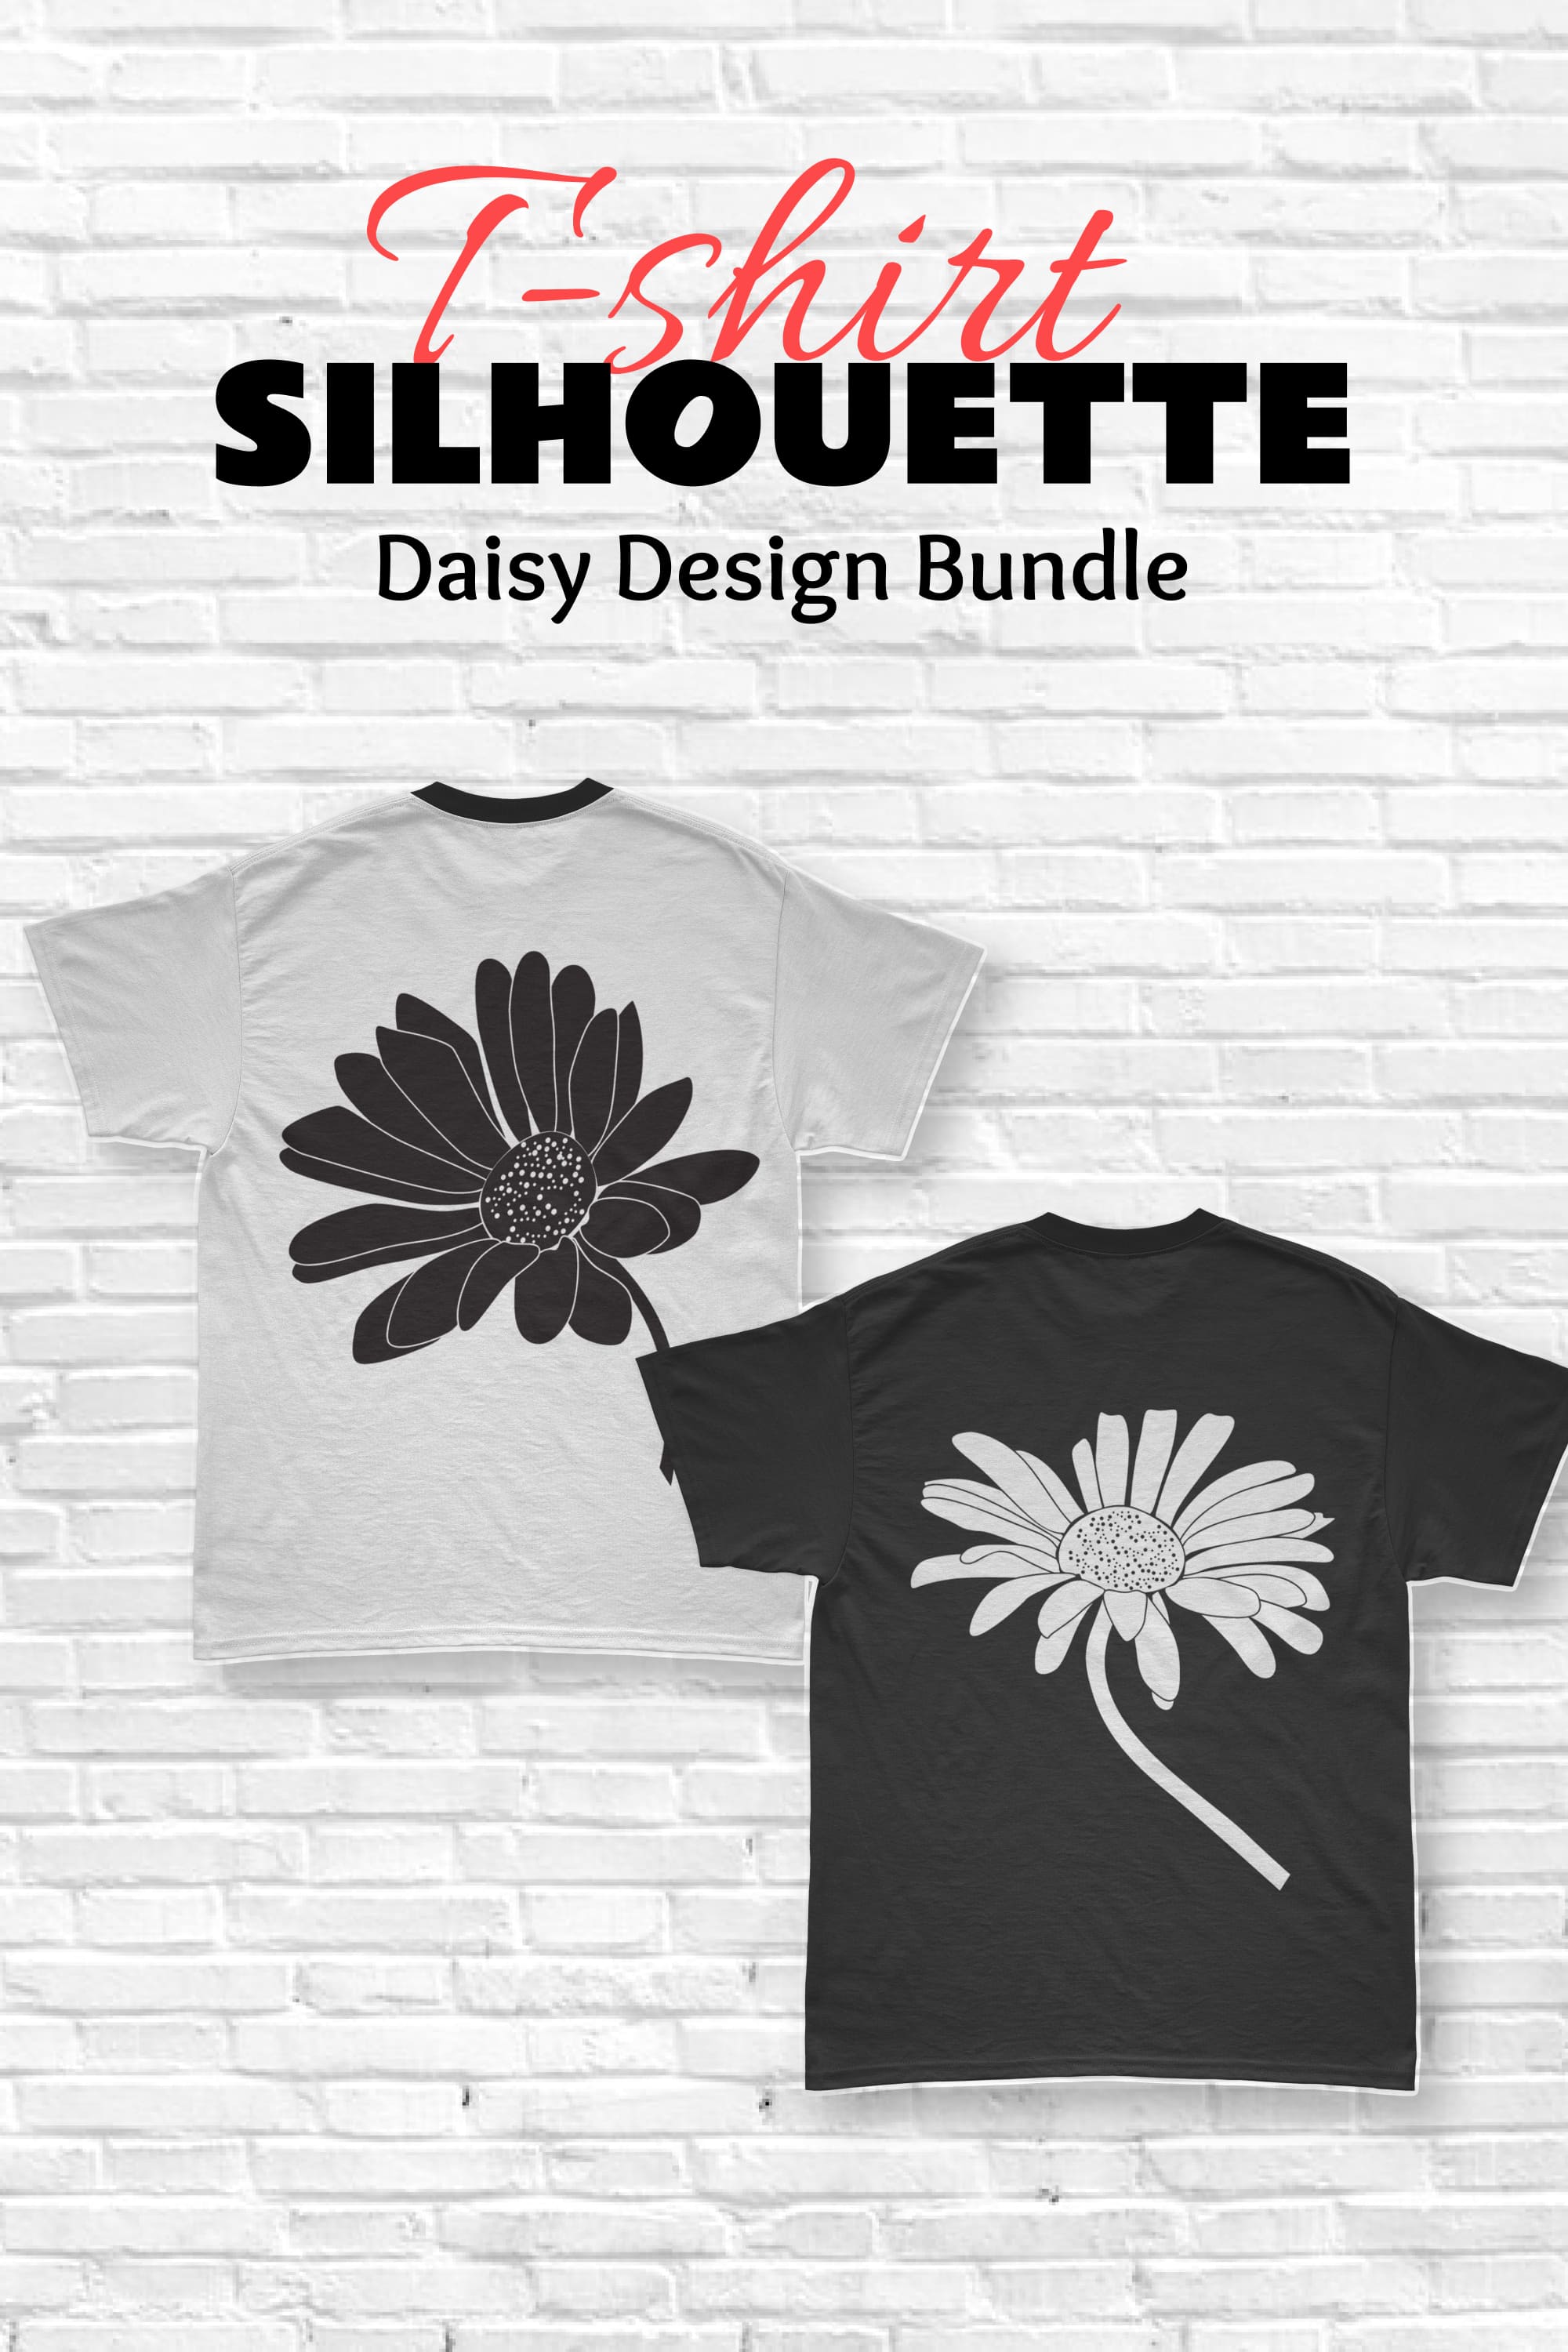 Silhouette Daisy T-shirt Designs Bundle - pinterest image preview.